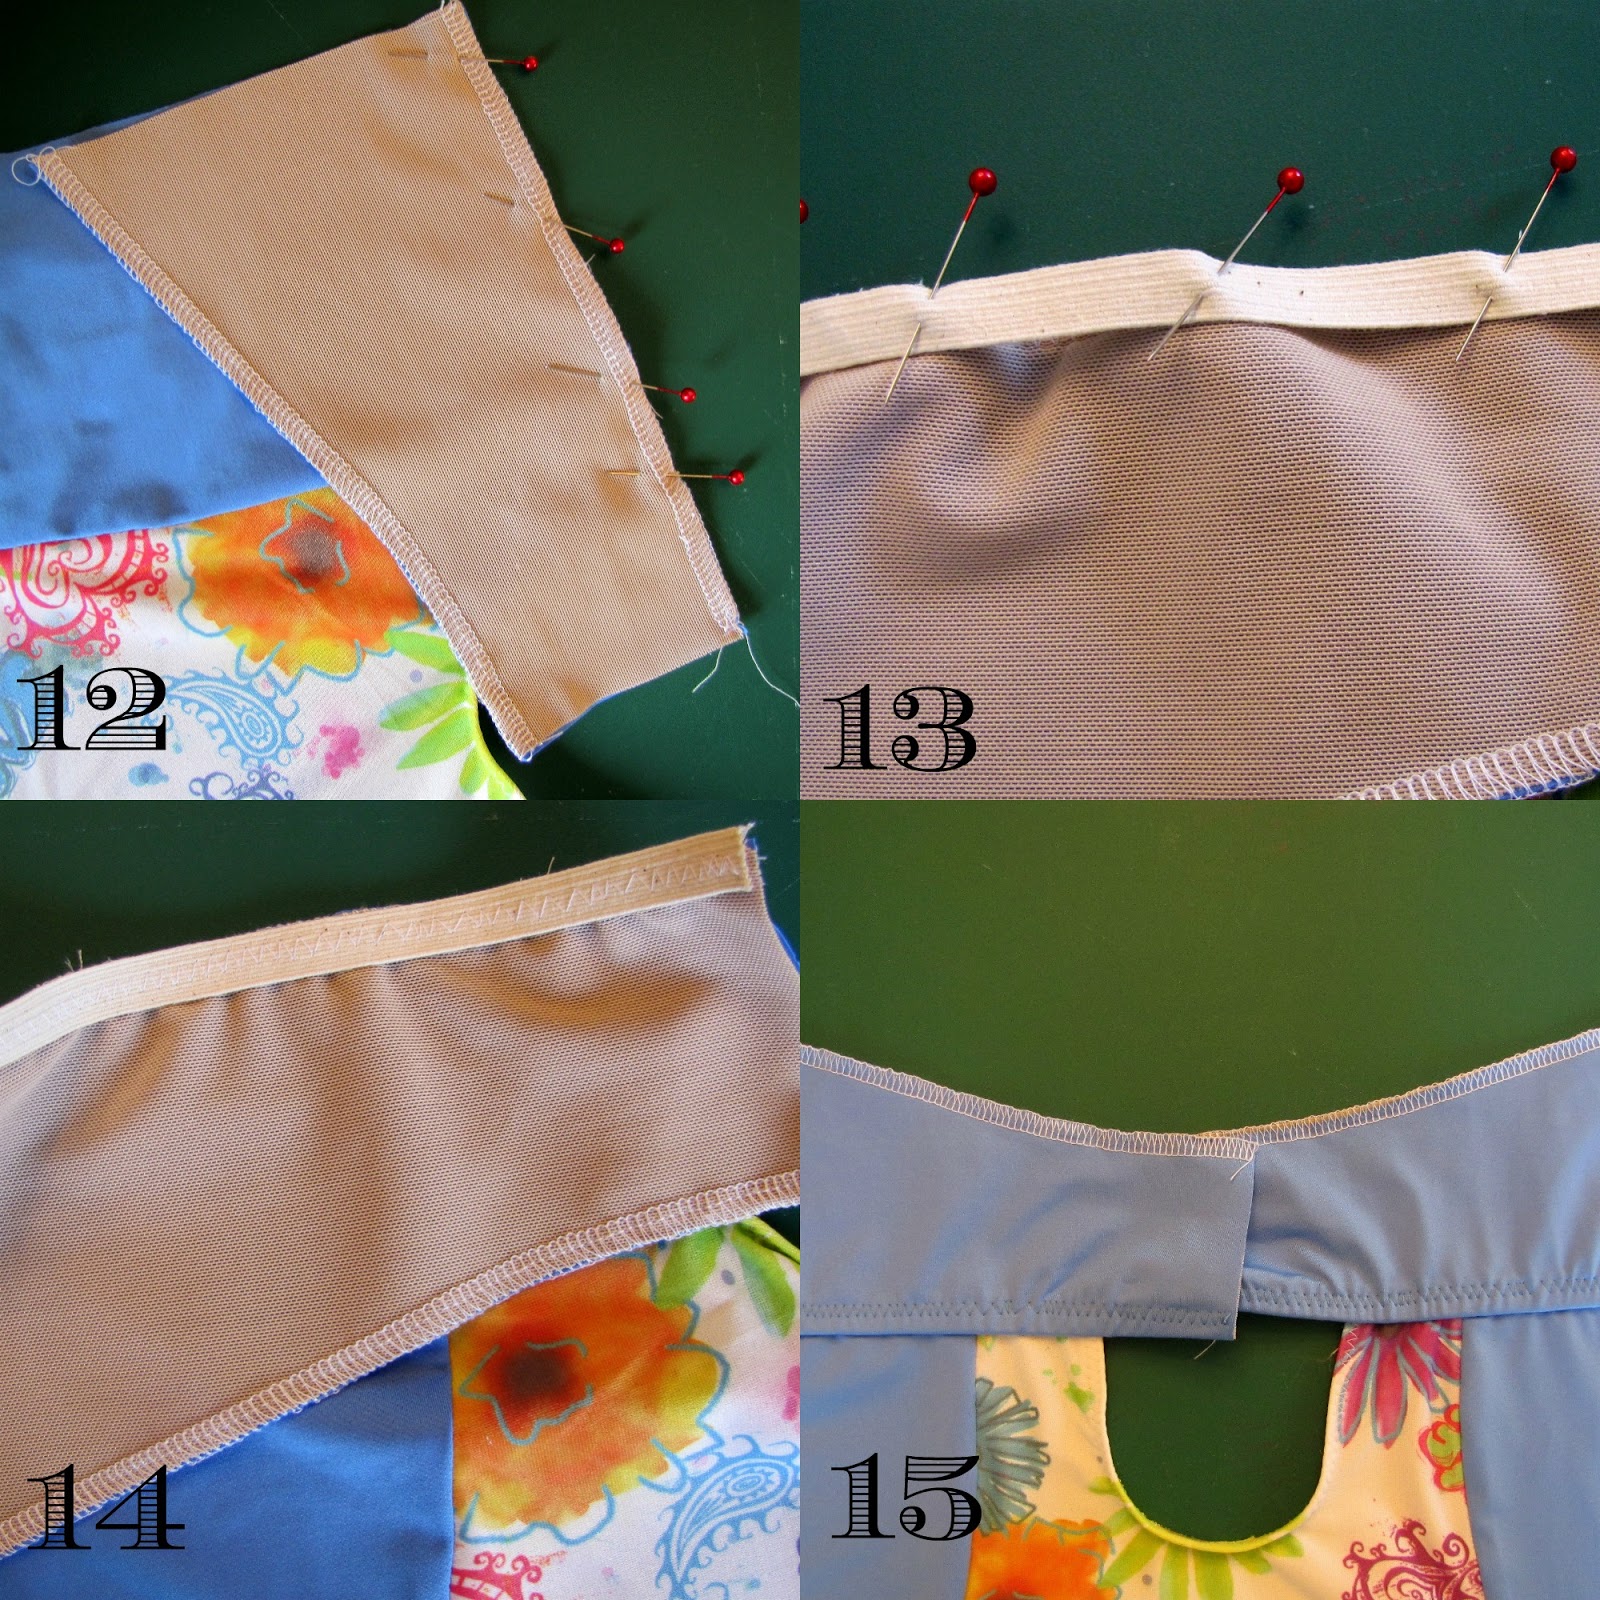 Sophie Swimsuit, Closet Case Files, View A & B Hack, Vancouver Sewing Blog, Vancouver Sewing Blogger